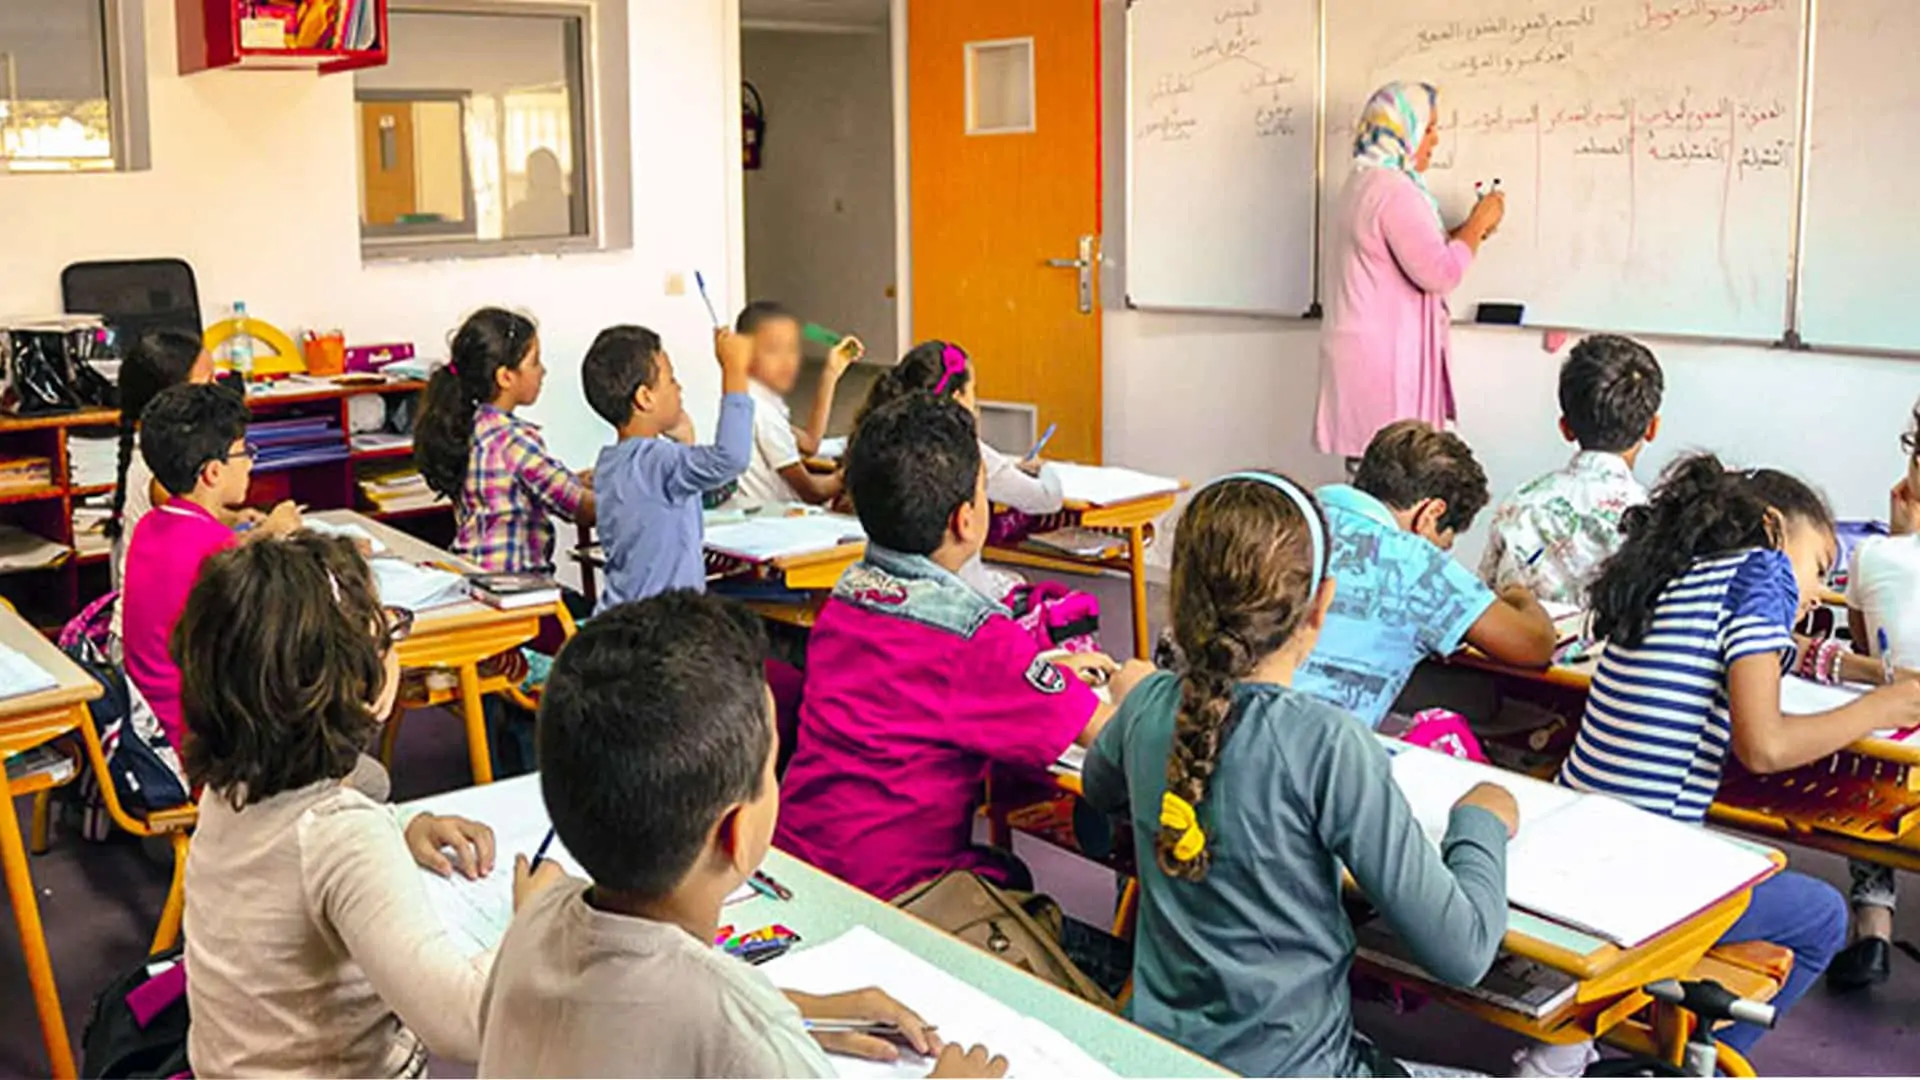 École primaire Marocaine